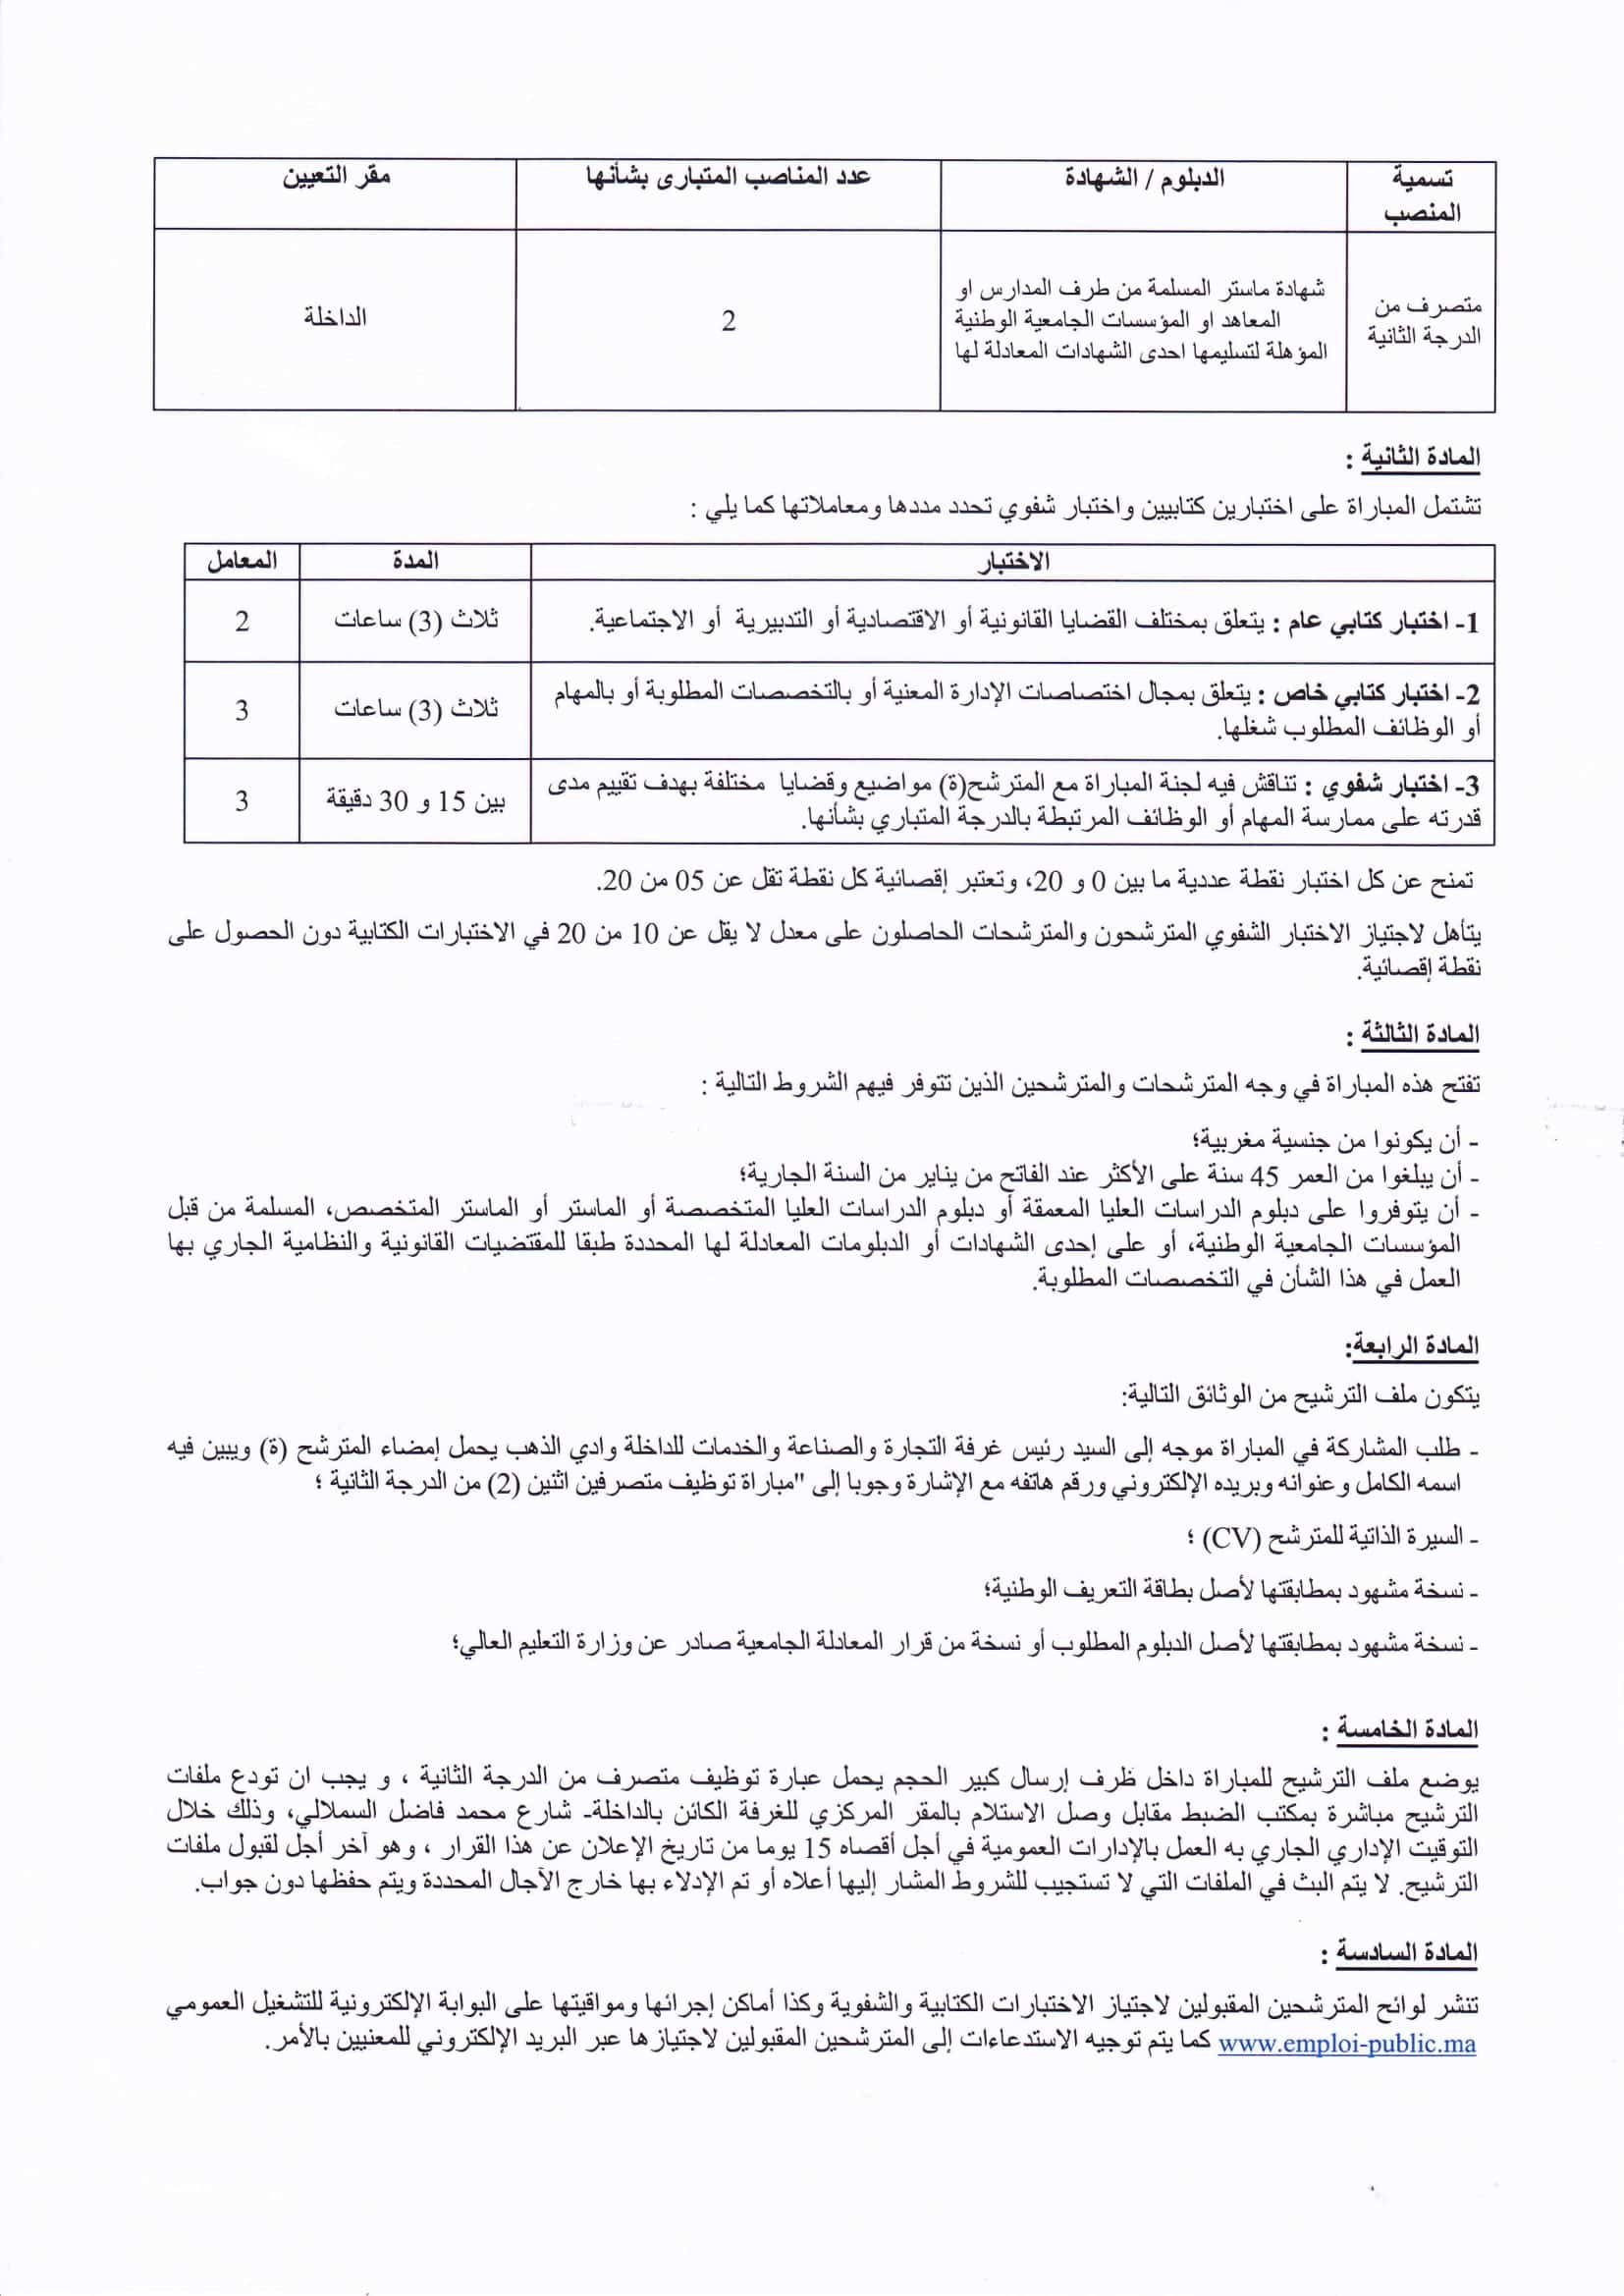 nomFichier3876 2 Concours Chambre de Commerce d’Industrie Dakhla Oued Eddahab (4 Postes)